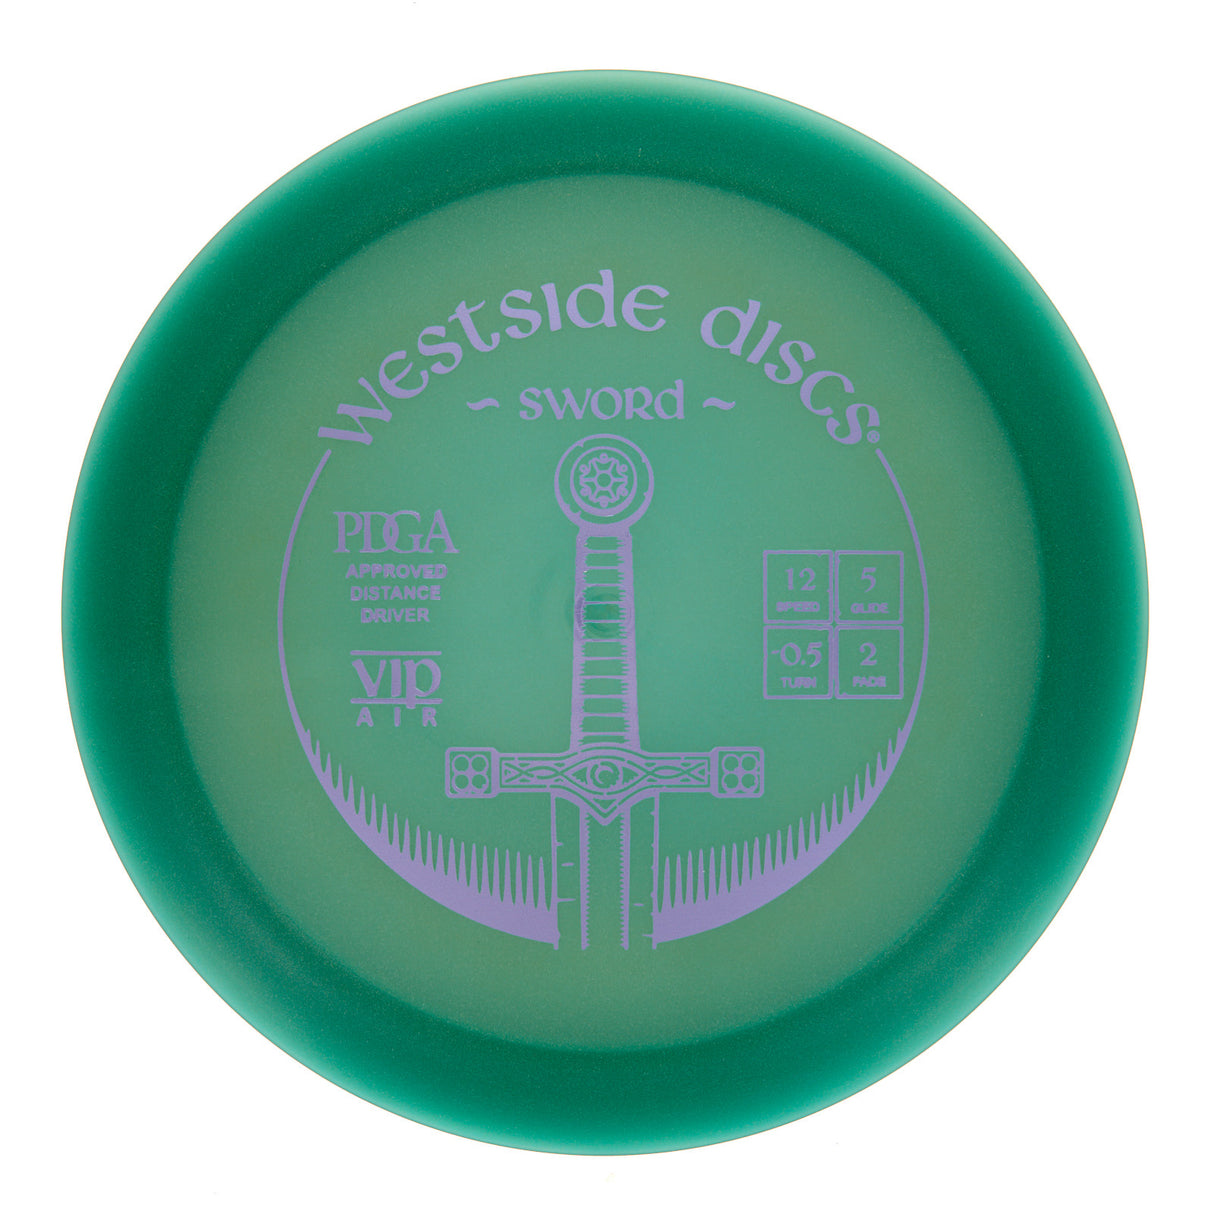 Westside Sword - VIP Air 158g | Style 0001